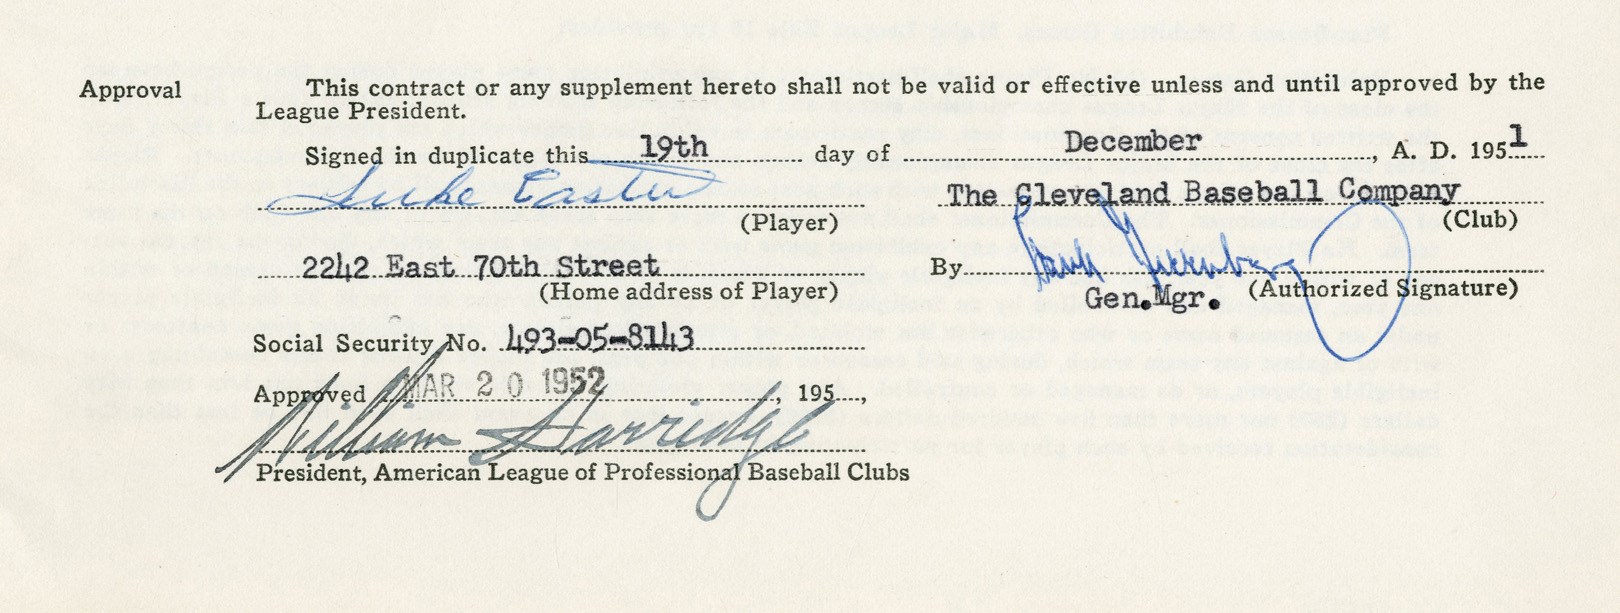 Negro League, Latin, Japanese & International Base - 1952 Luke Easter Cleveland Indians Baseball Contract